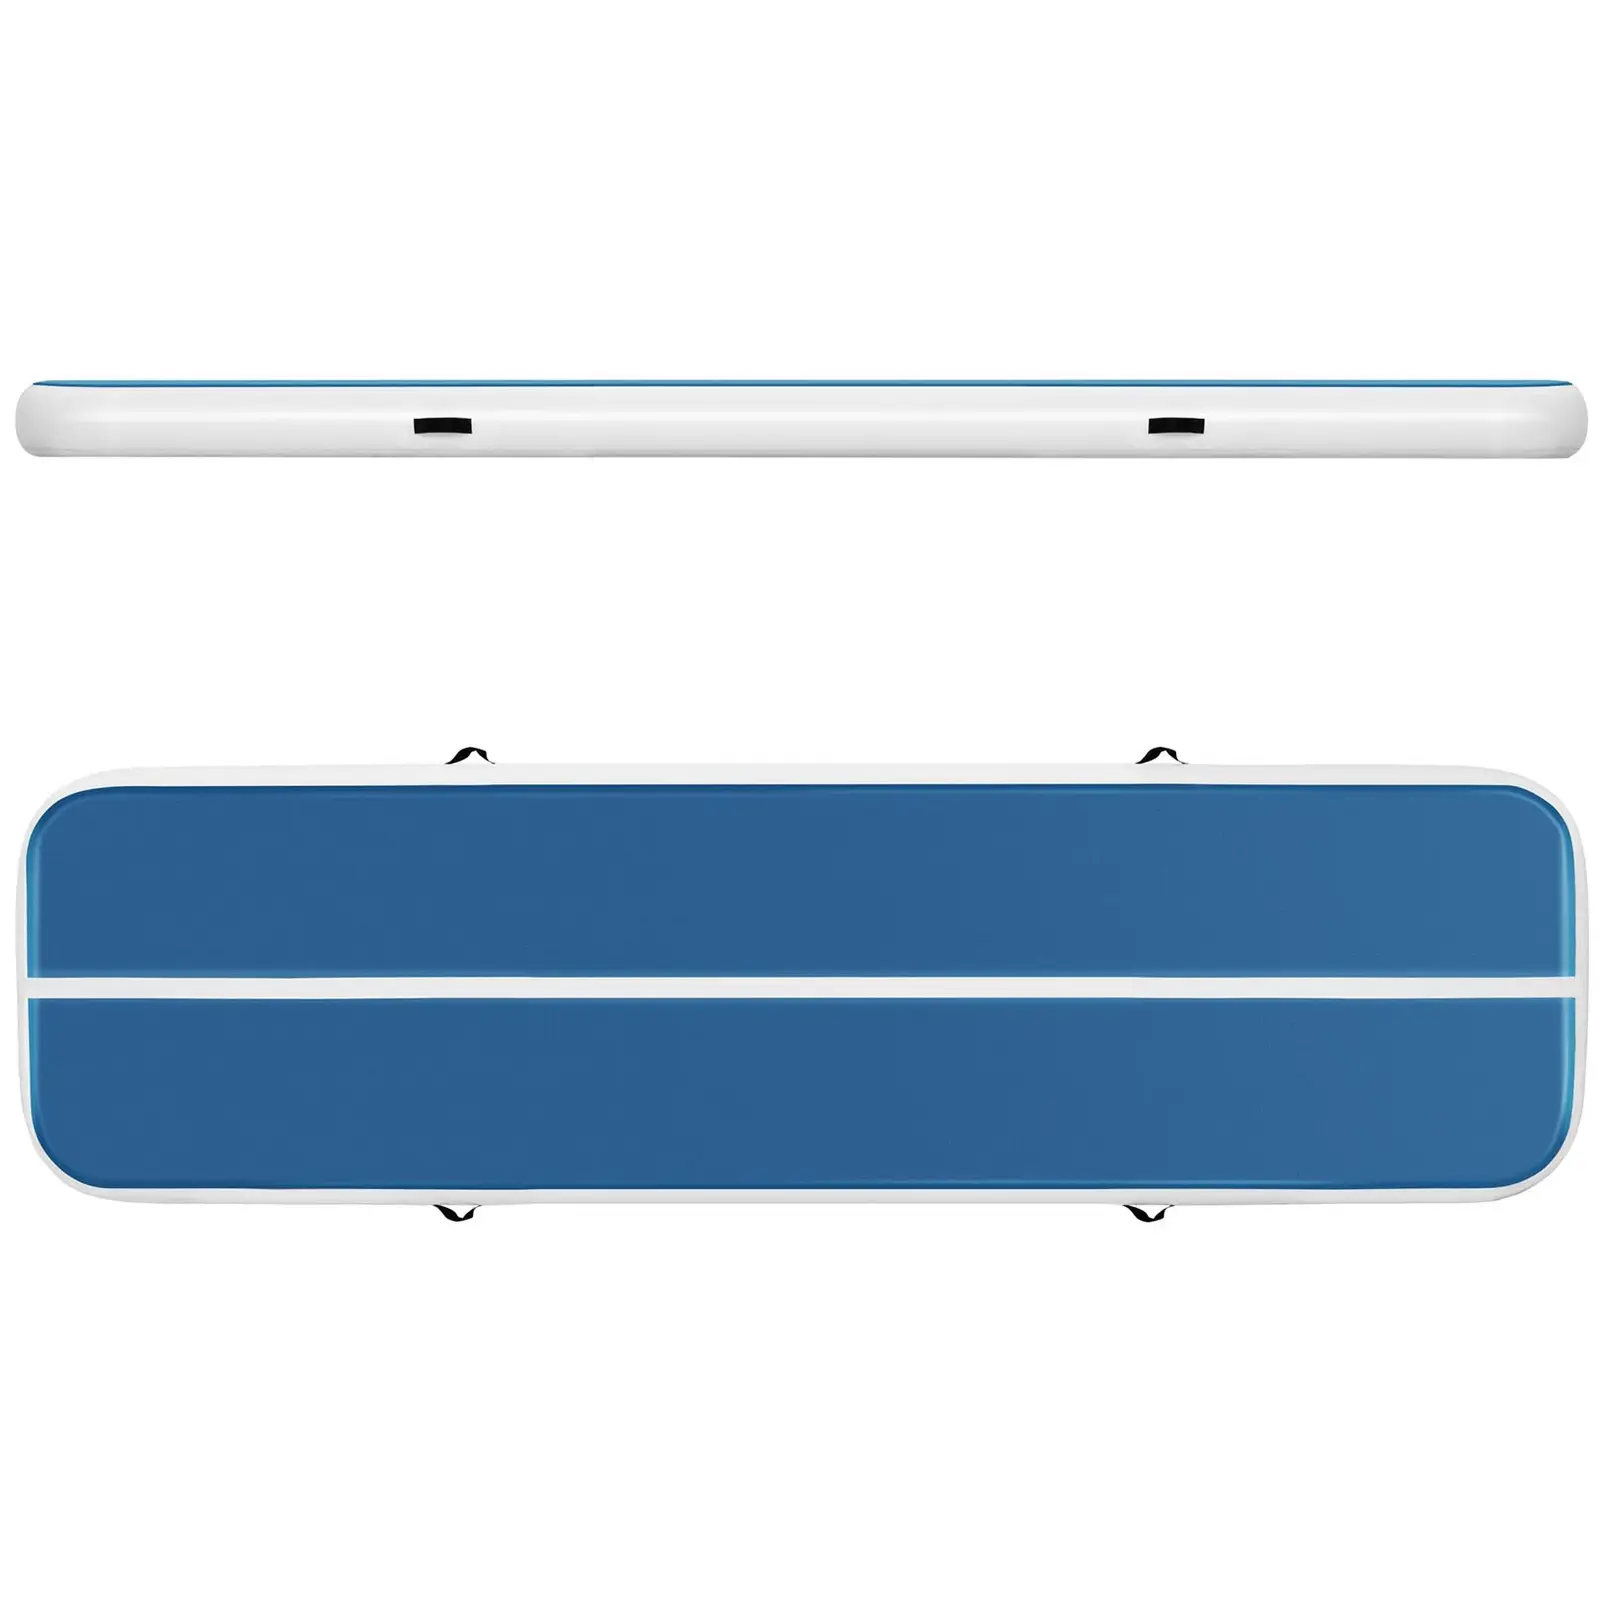 Tappeto da ginnastica gonfiabile - 400 x 100 x 20 cm - 200 kg - blu/bianco